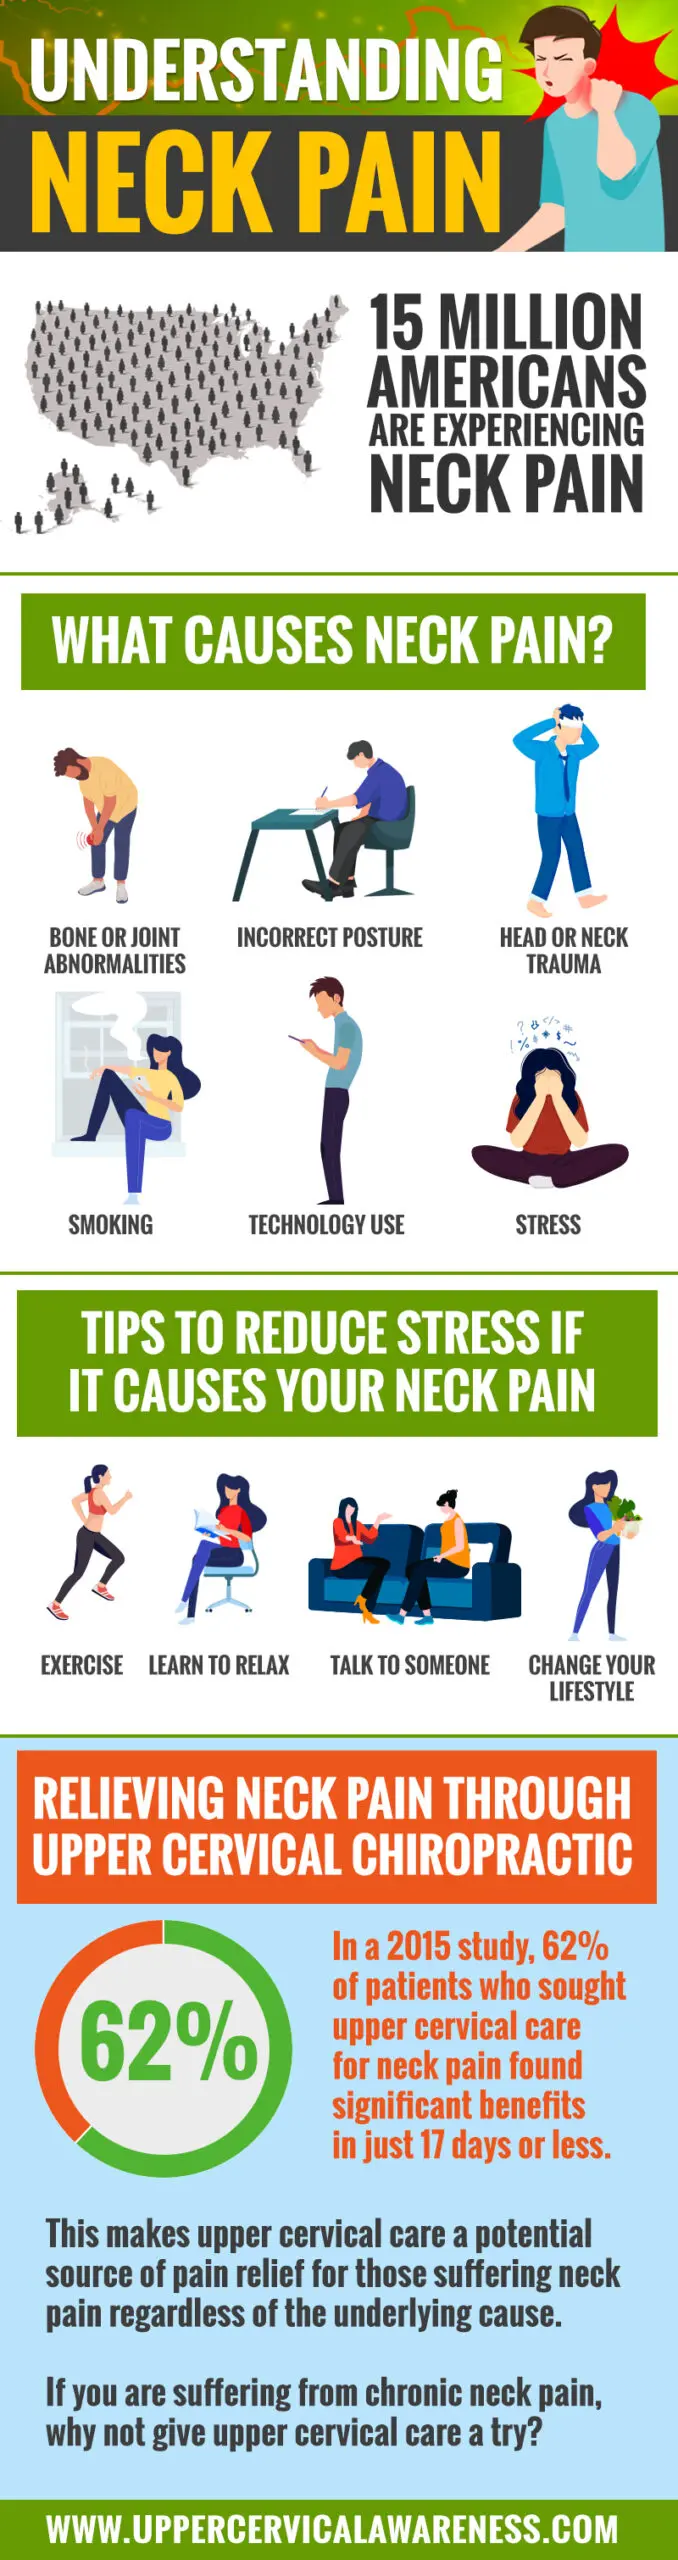 understanding-neck-pain